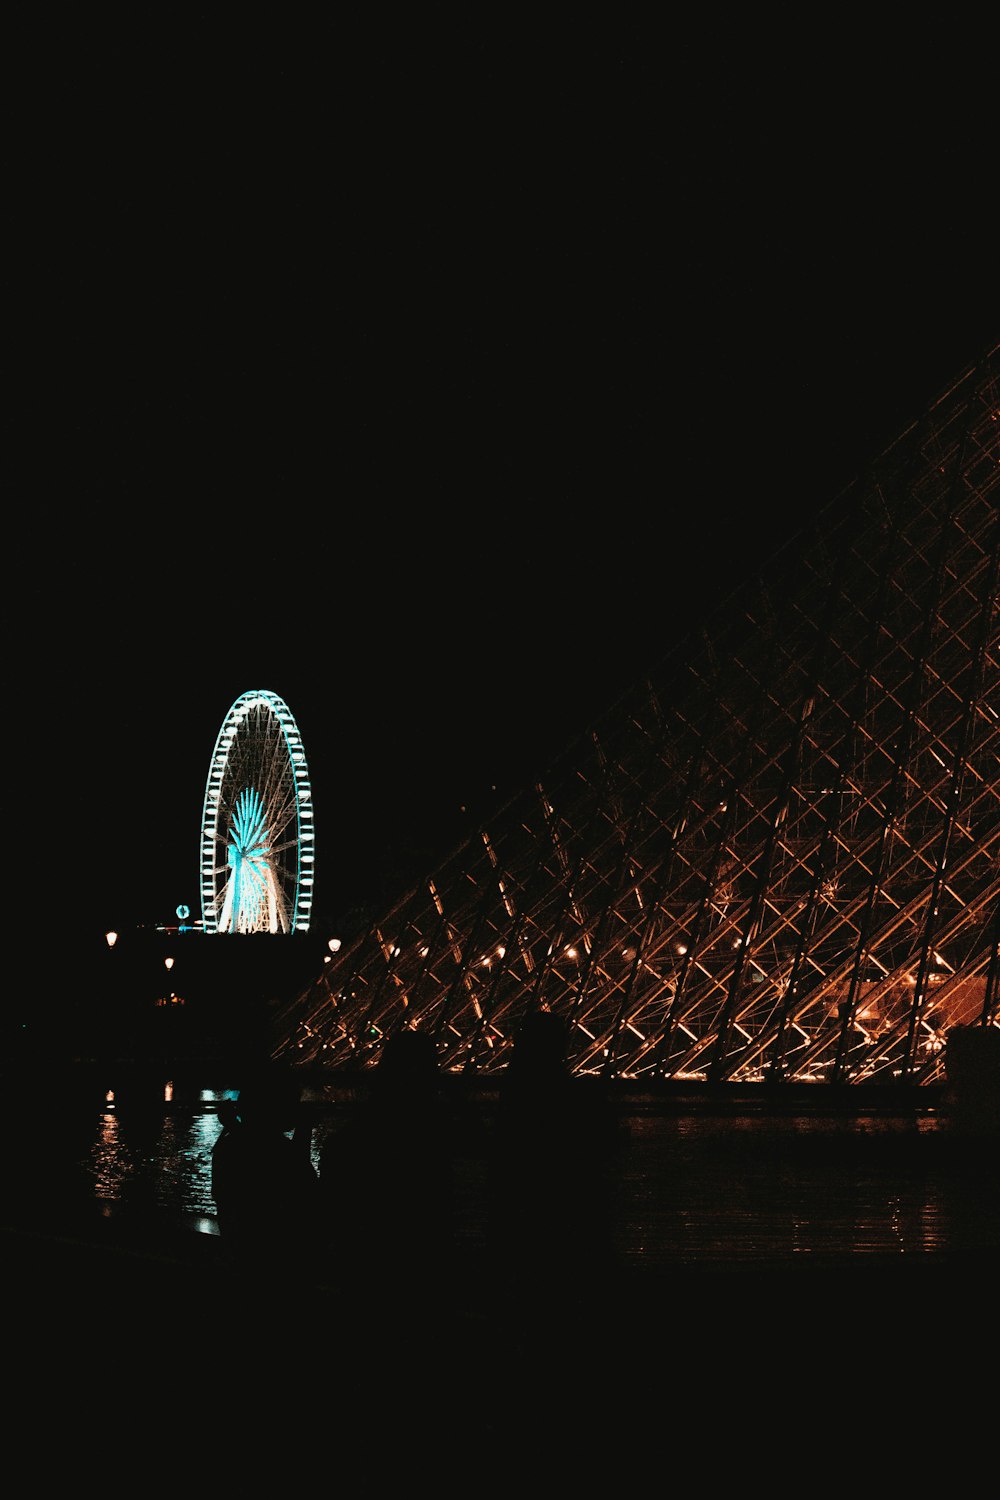 야간 놀이공원 근처 박물관